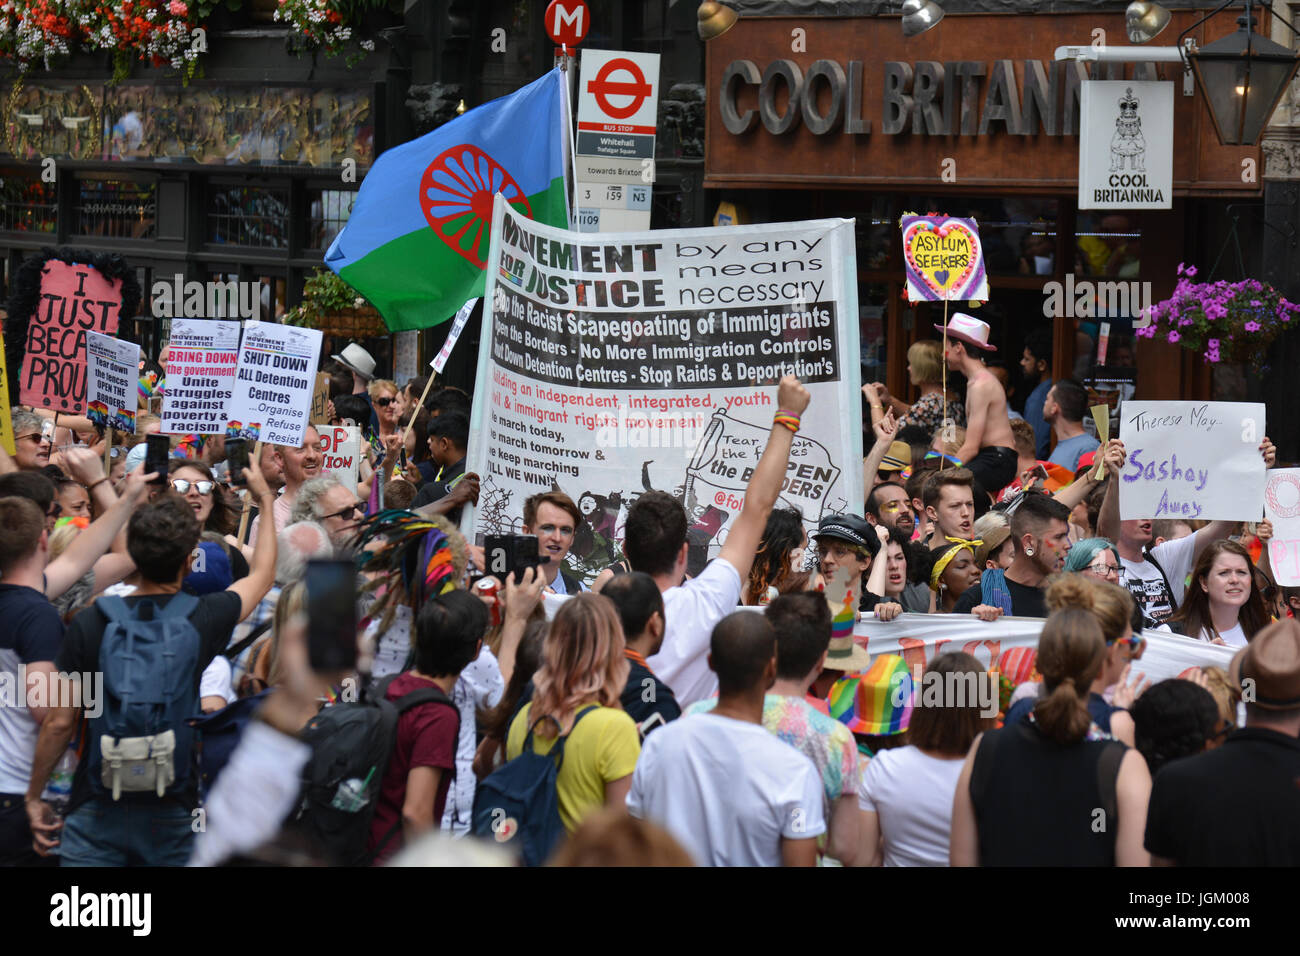 La fierté de Londres, 2017. Mouvement pour la justice réclame la même fierté que protester marchant devant de la parade officielle. Banque D'Images